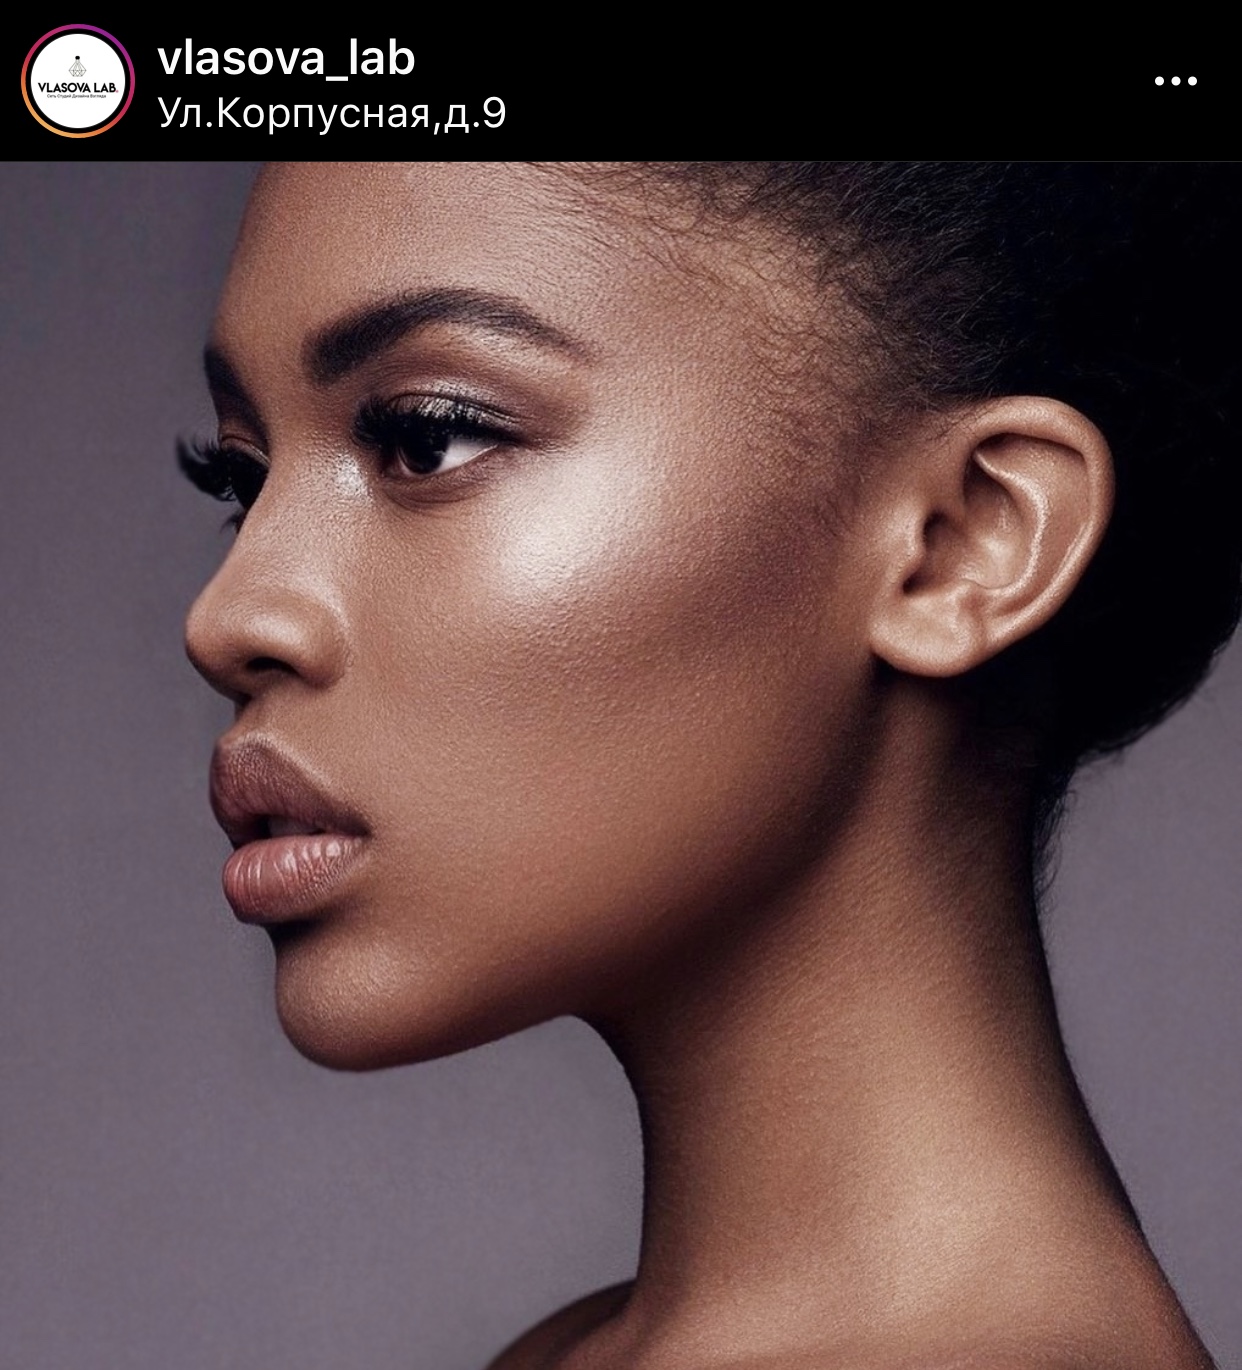 Скрины из Instagram компании Vlasova Lab с несколькими ключевыми мероприятиями: открытие совместной студии с компанией ПИLКИ, участие в TimeOut Beauty Awards и одна из фотосессий